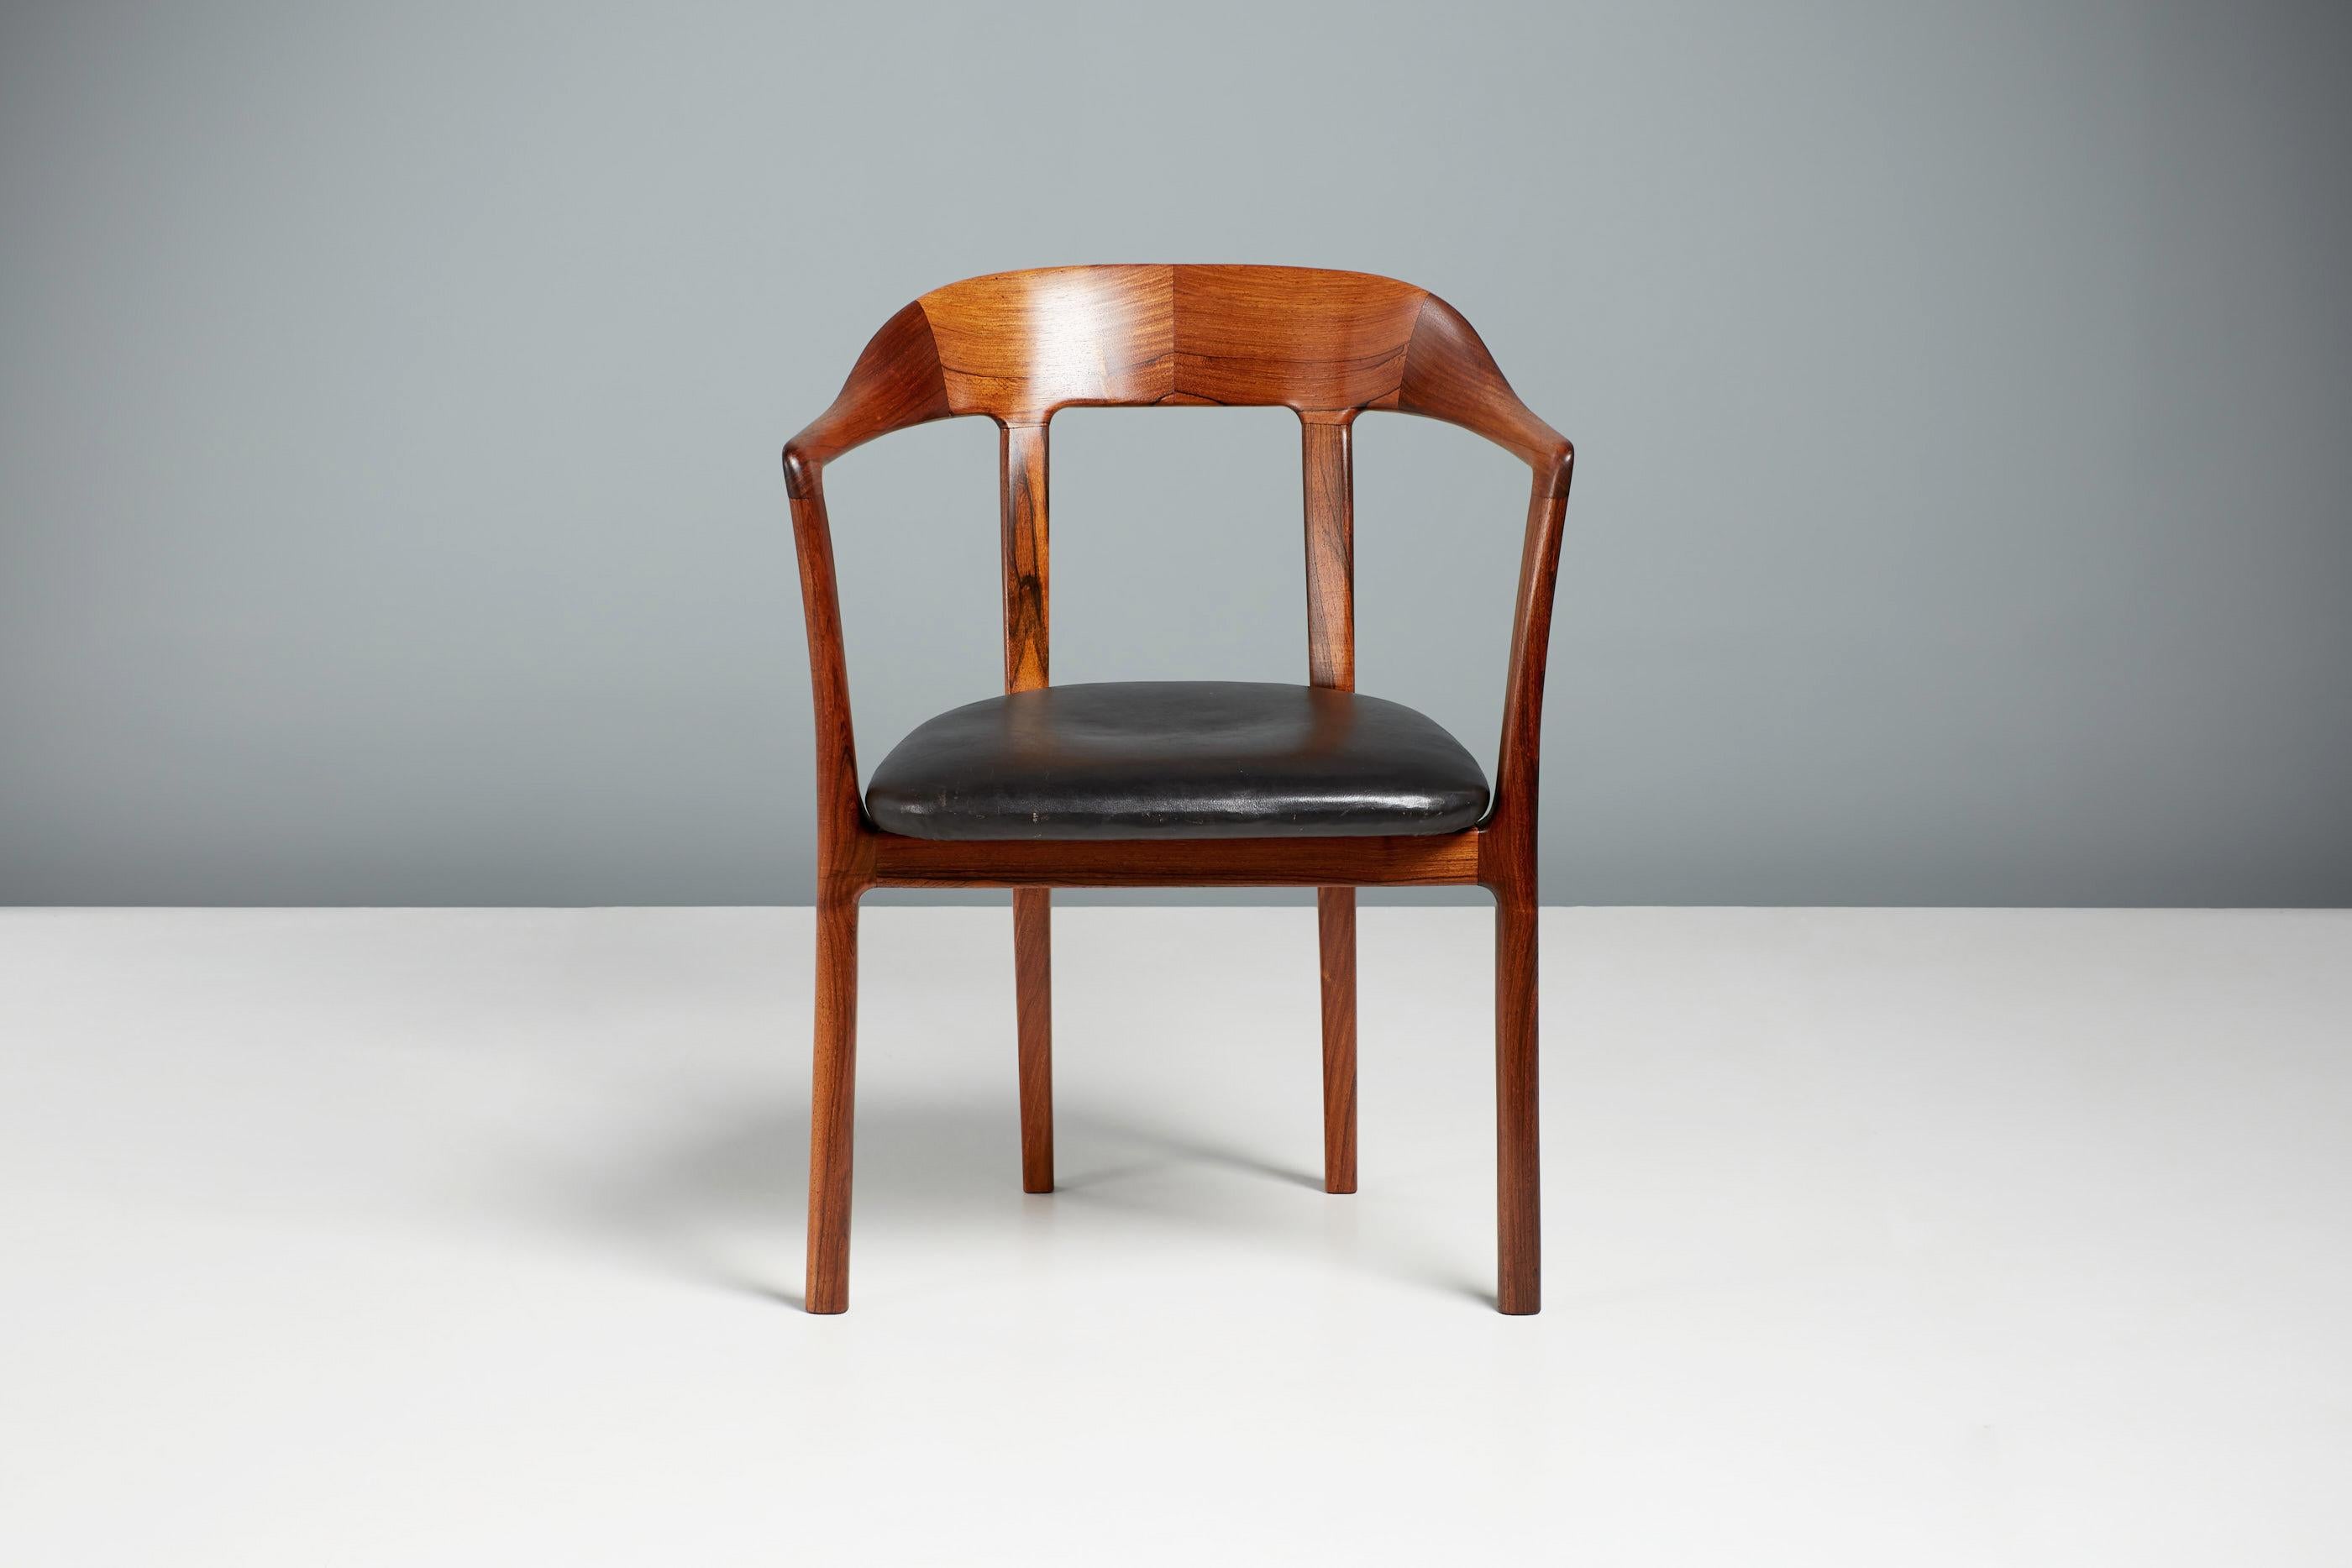 Ole Wanscher - Prinzessinnen-Sessel, 1958

Das Modell J2883, das 1958 vom Meisterdesigner Ole Wanscher entworfen wurde, erhielt seinen Spitznamen dank einer dänischen Prinzessin, die den Stuhl während eines Besuchs der Ausstellung der Cabinetmakers'